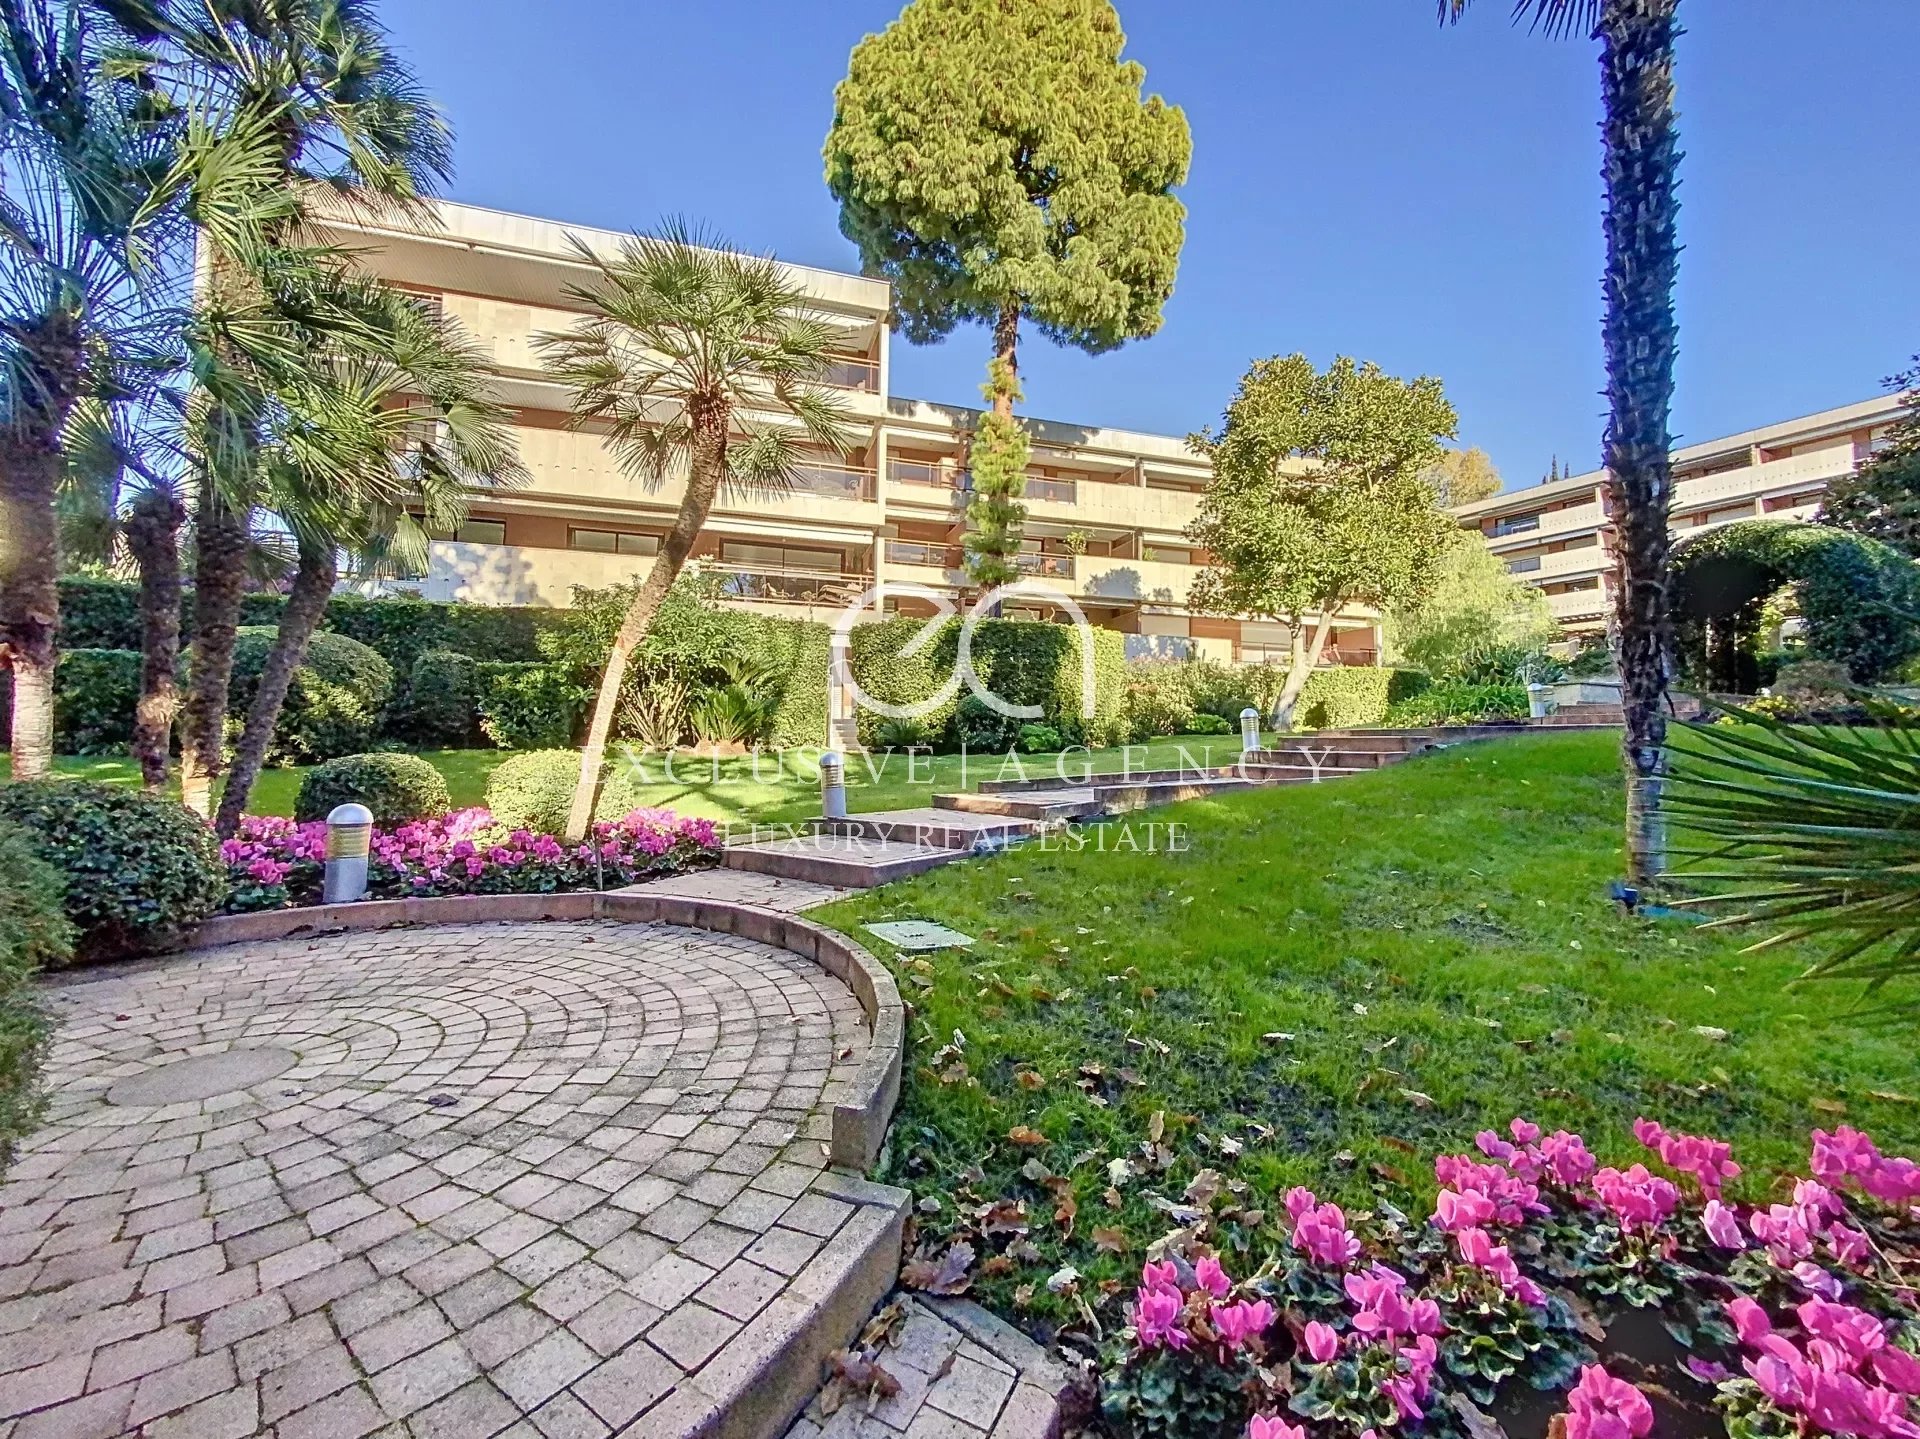 Cannes basse Californie - Lumineux 3 pièces de 82m² résidence de grand standing